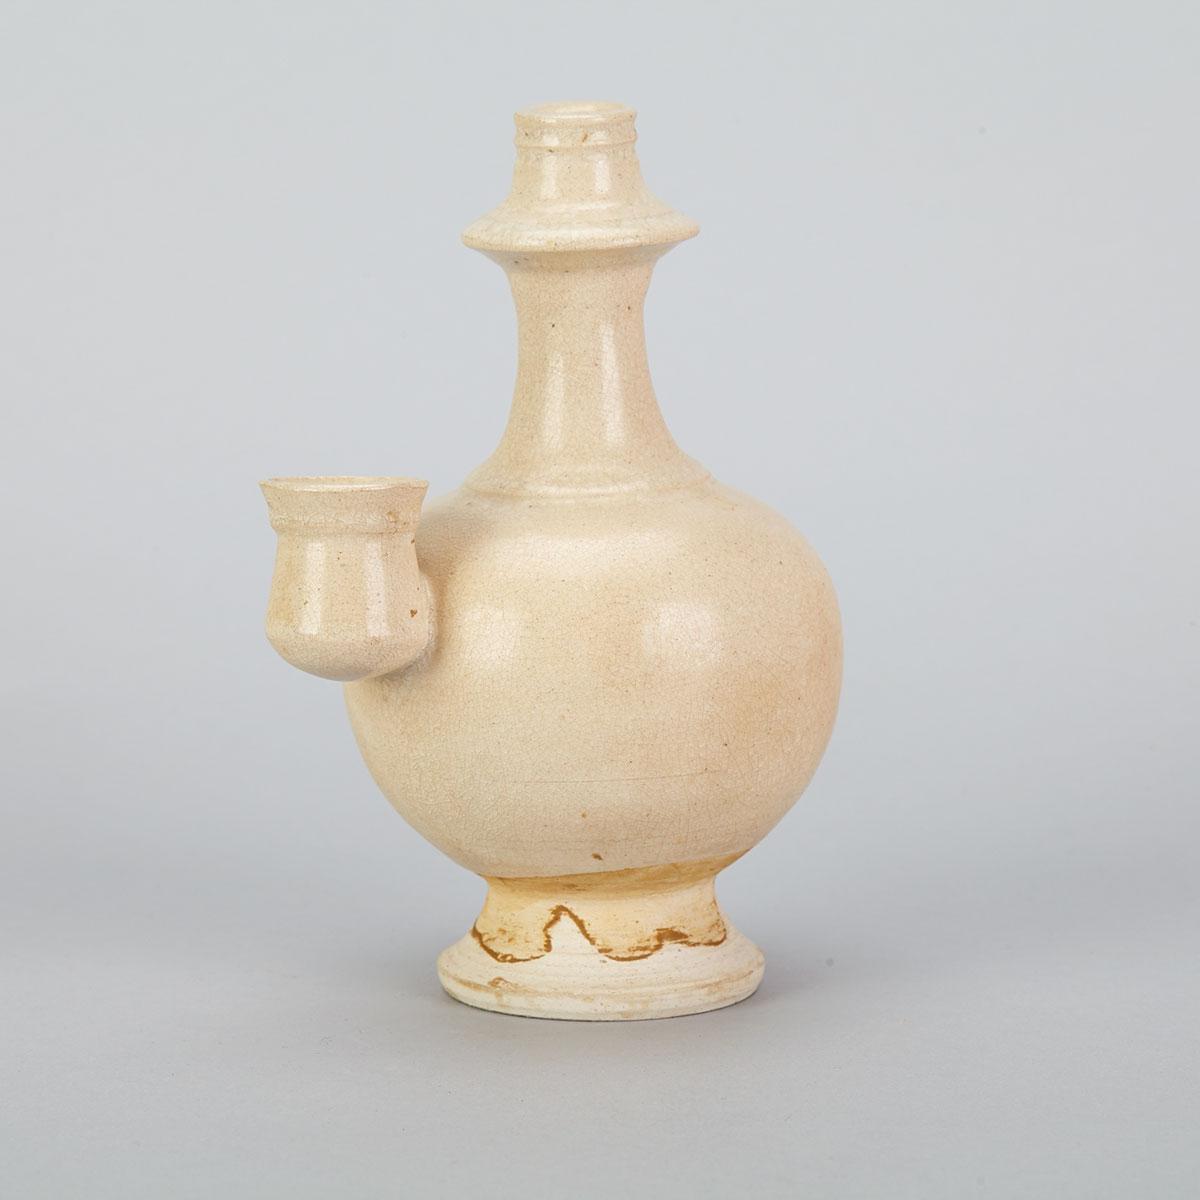 Two White Glaze Ceramic Wares